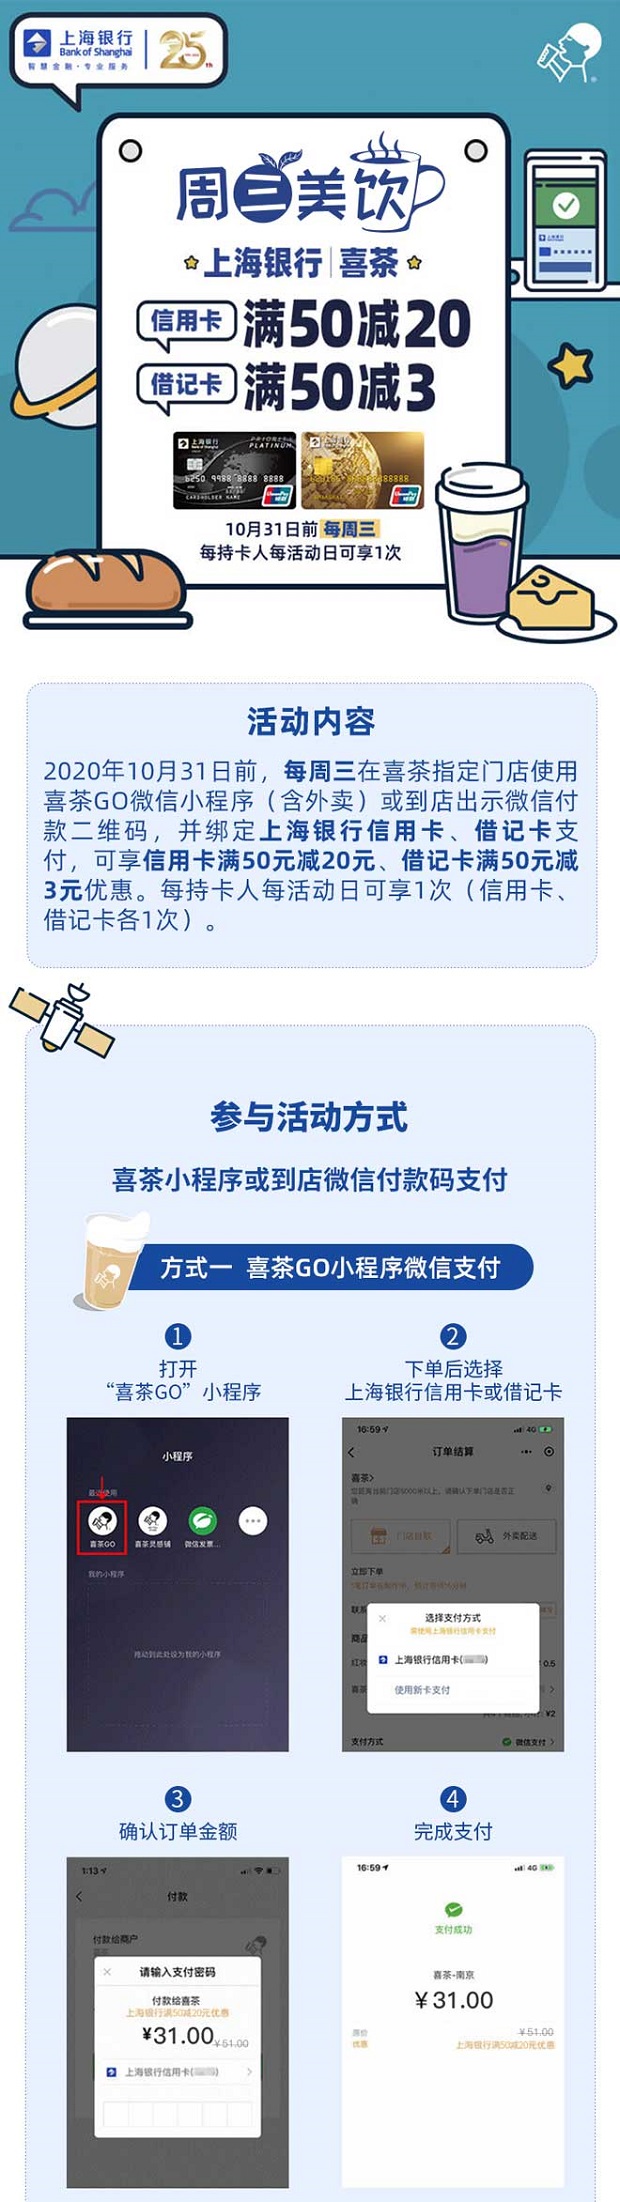 上海银行信用卡喜茶每周三满50减20元